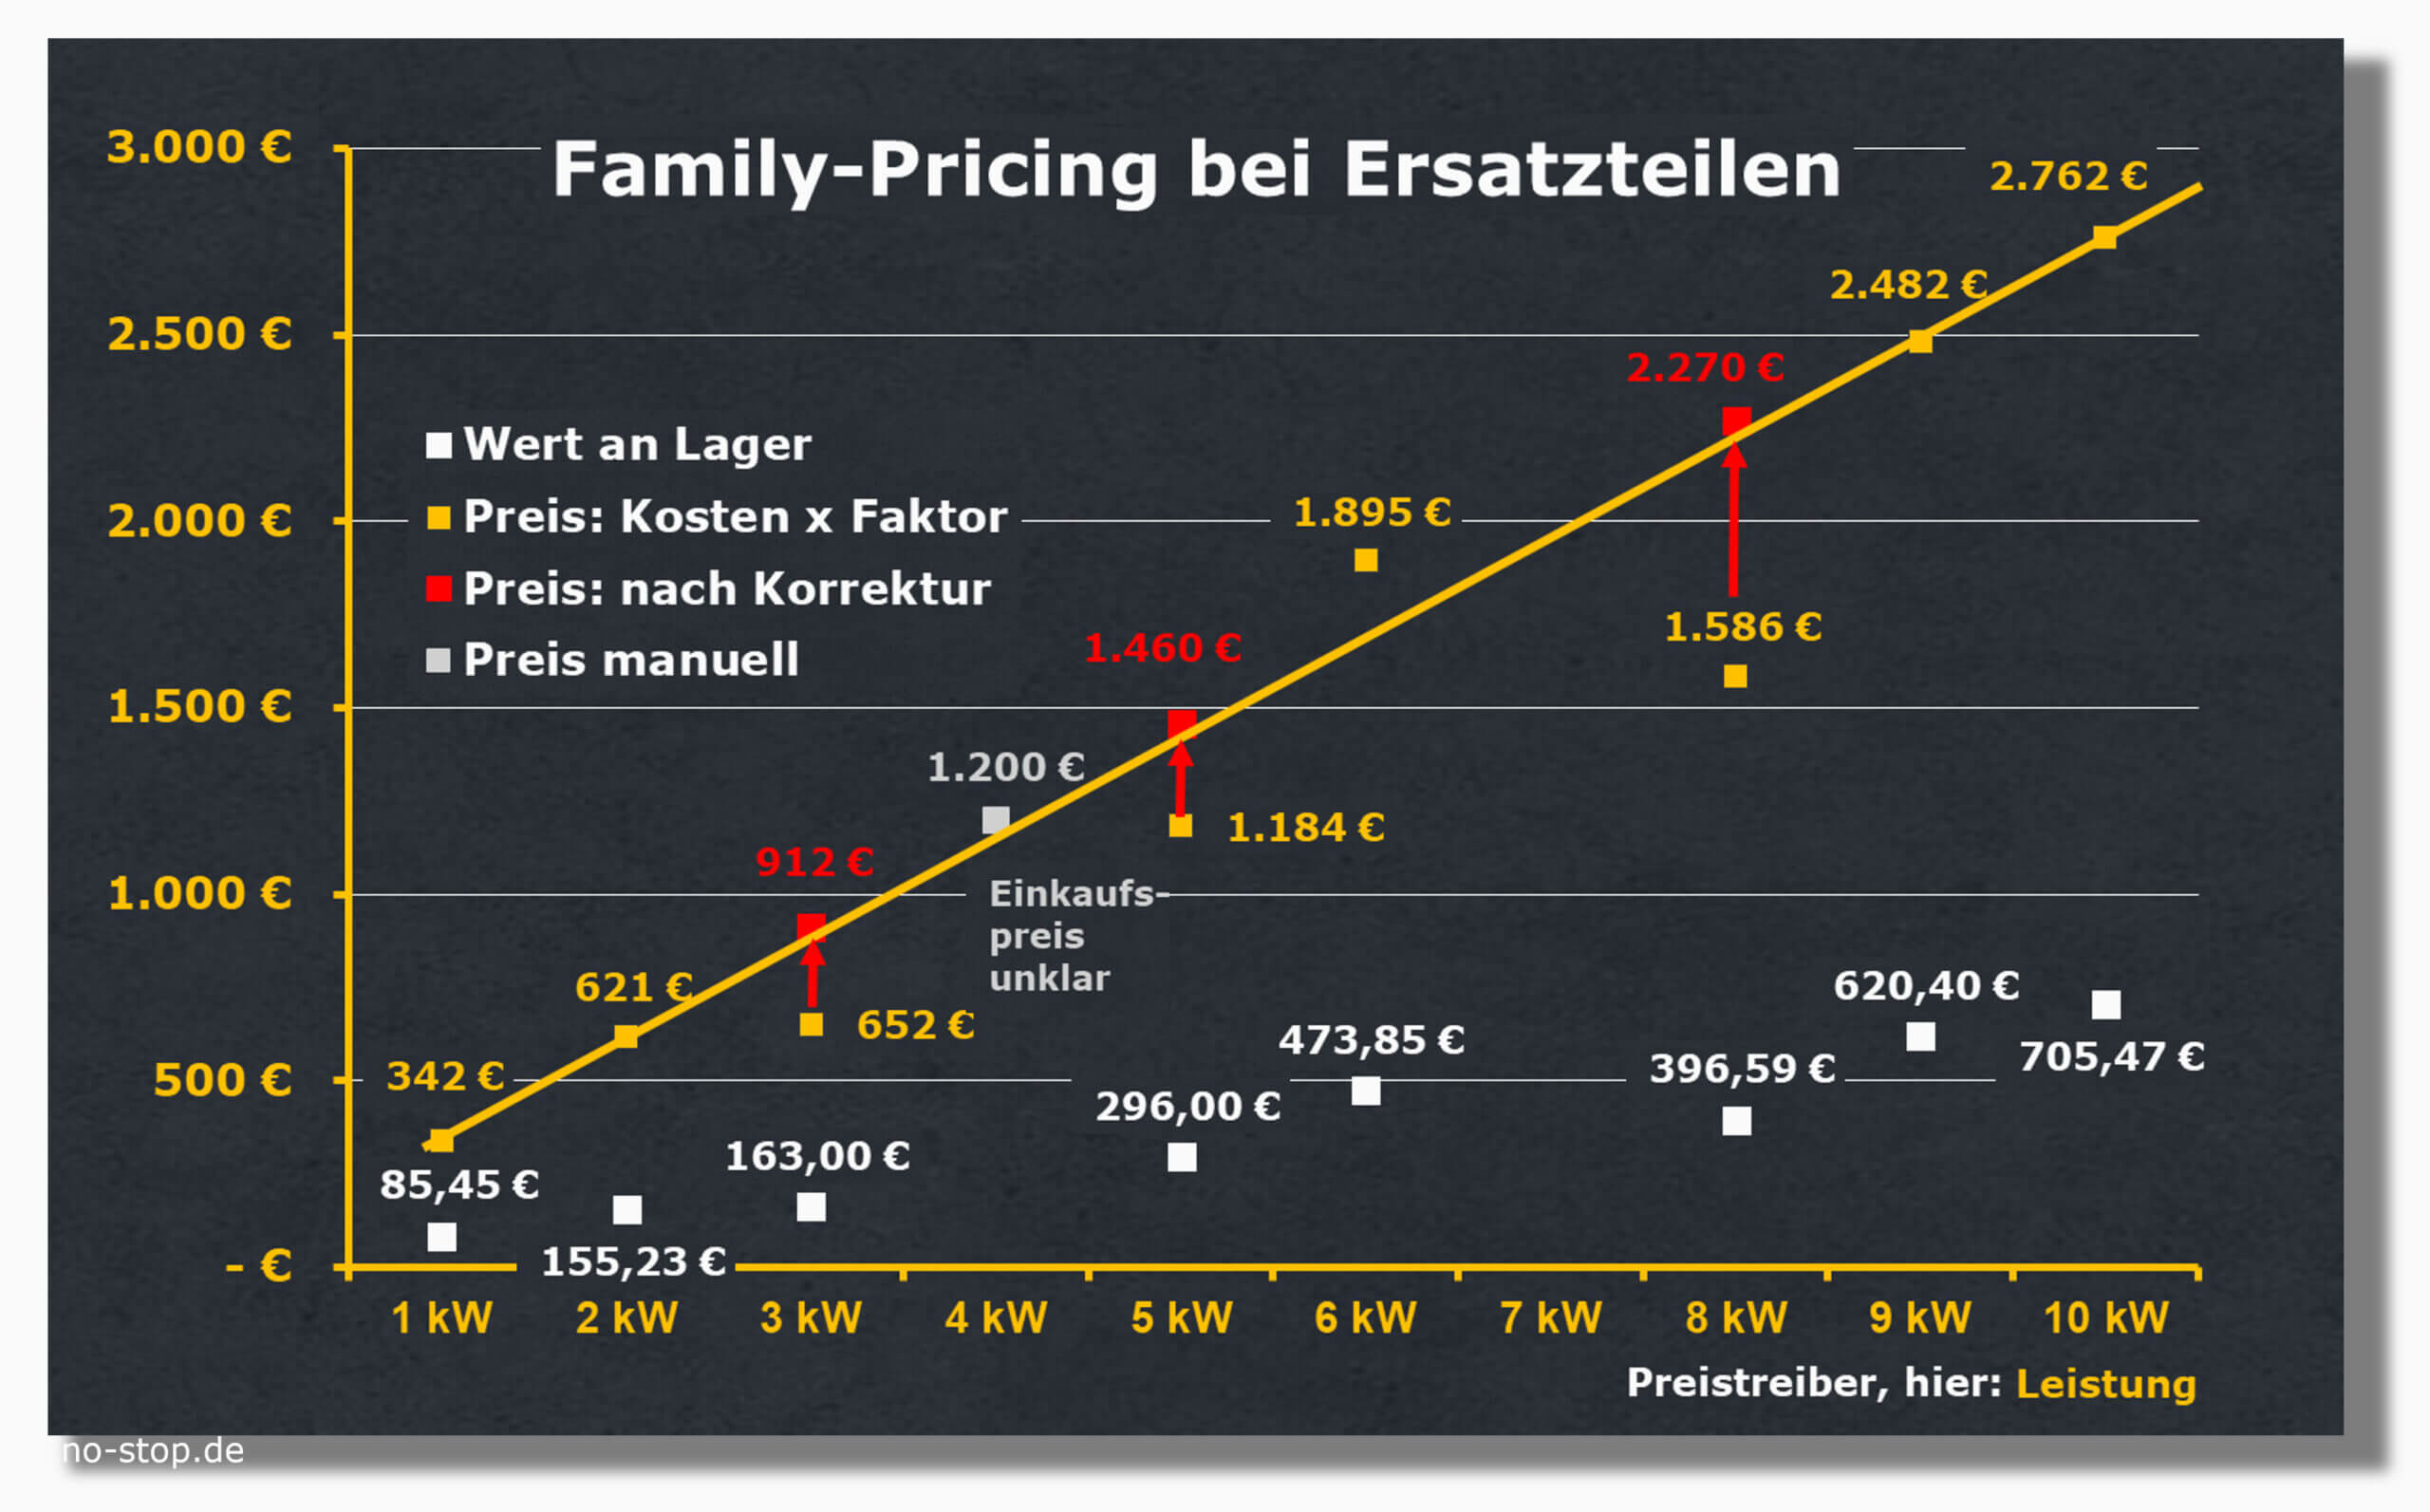 Preisstrategie "Family-Pricing" bei Ersatzteilen